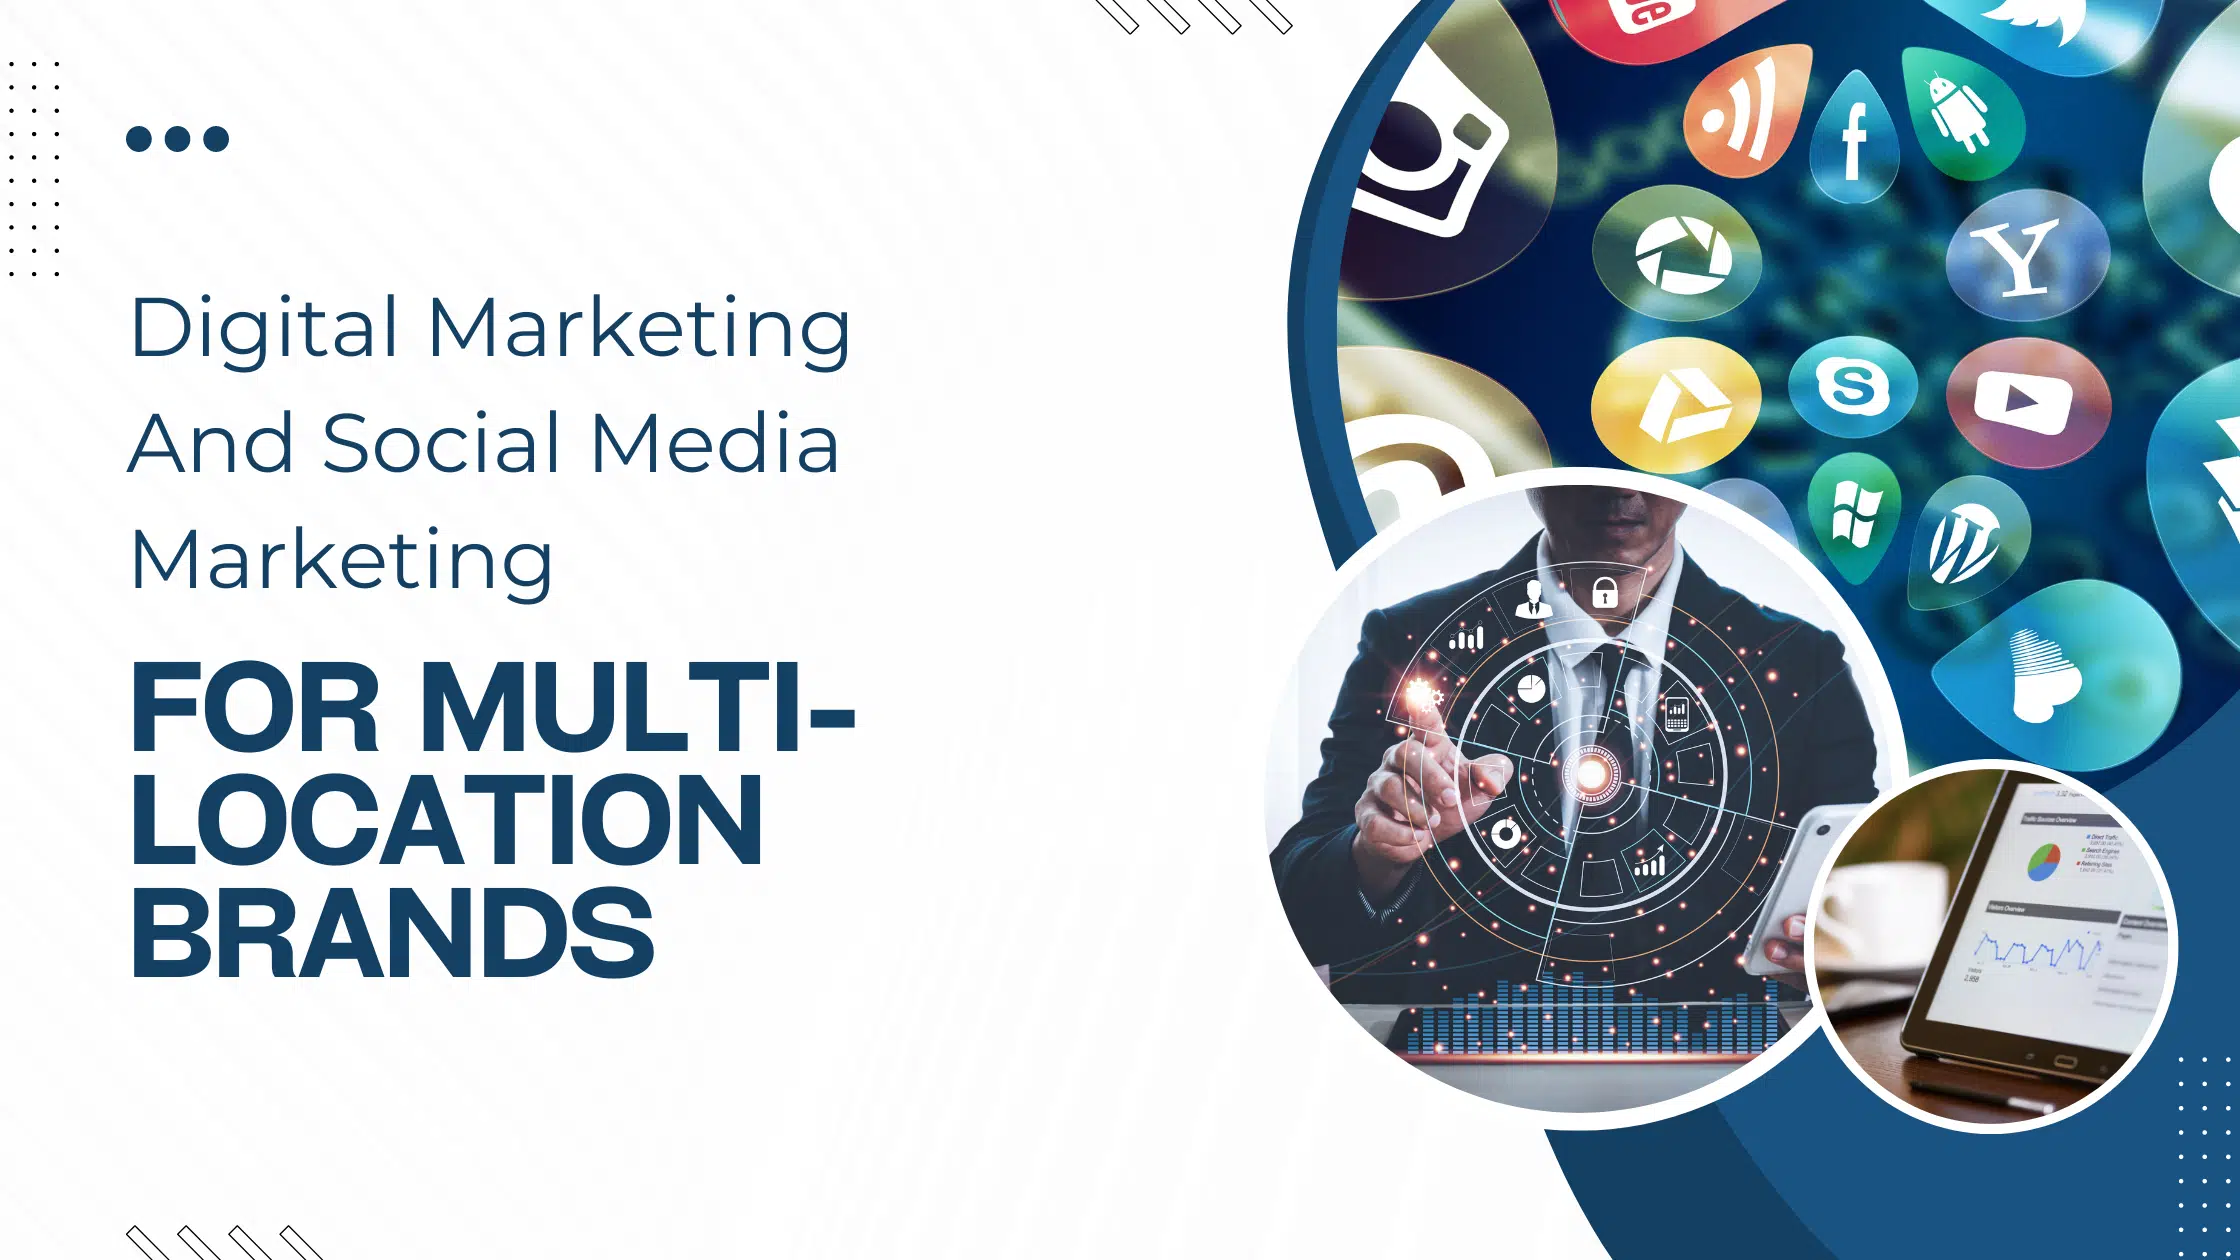 Digital Marketing And Social Media Marketing For Multi-Location Brands